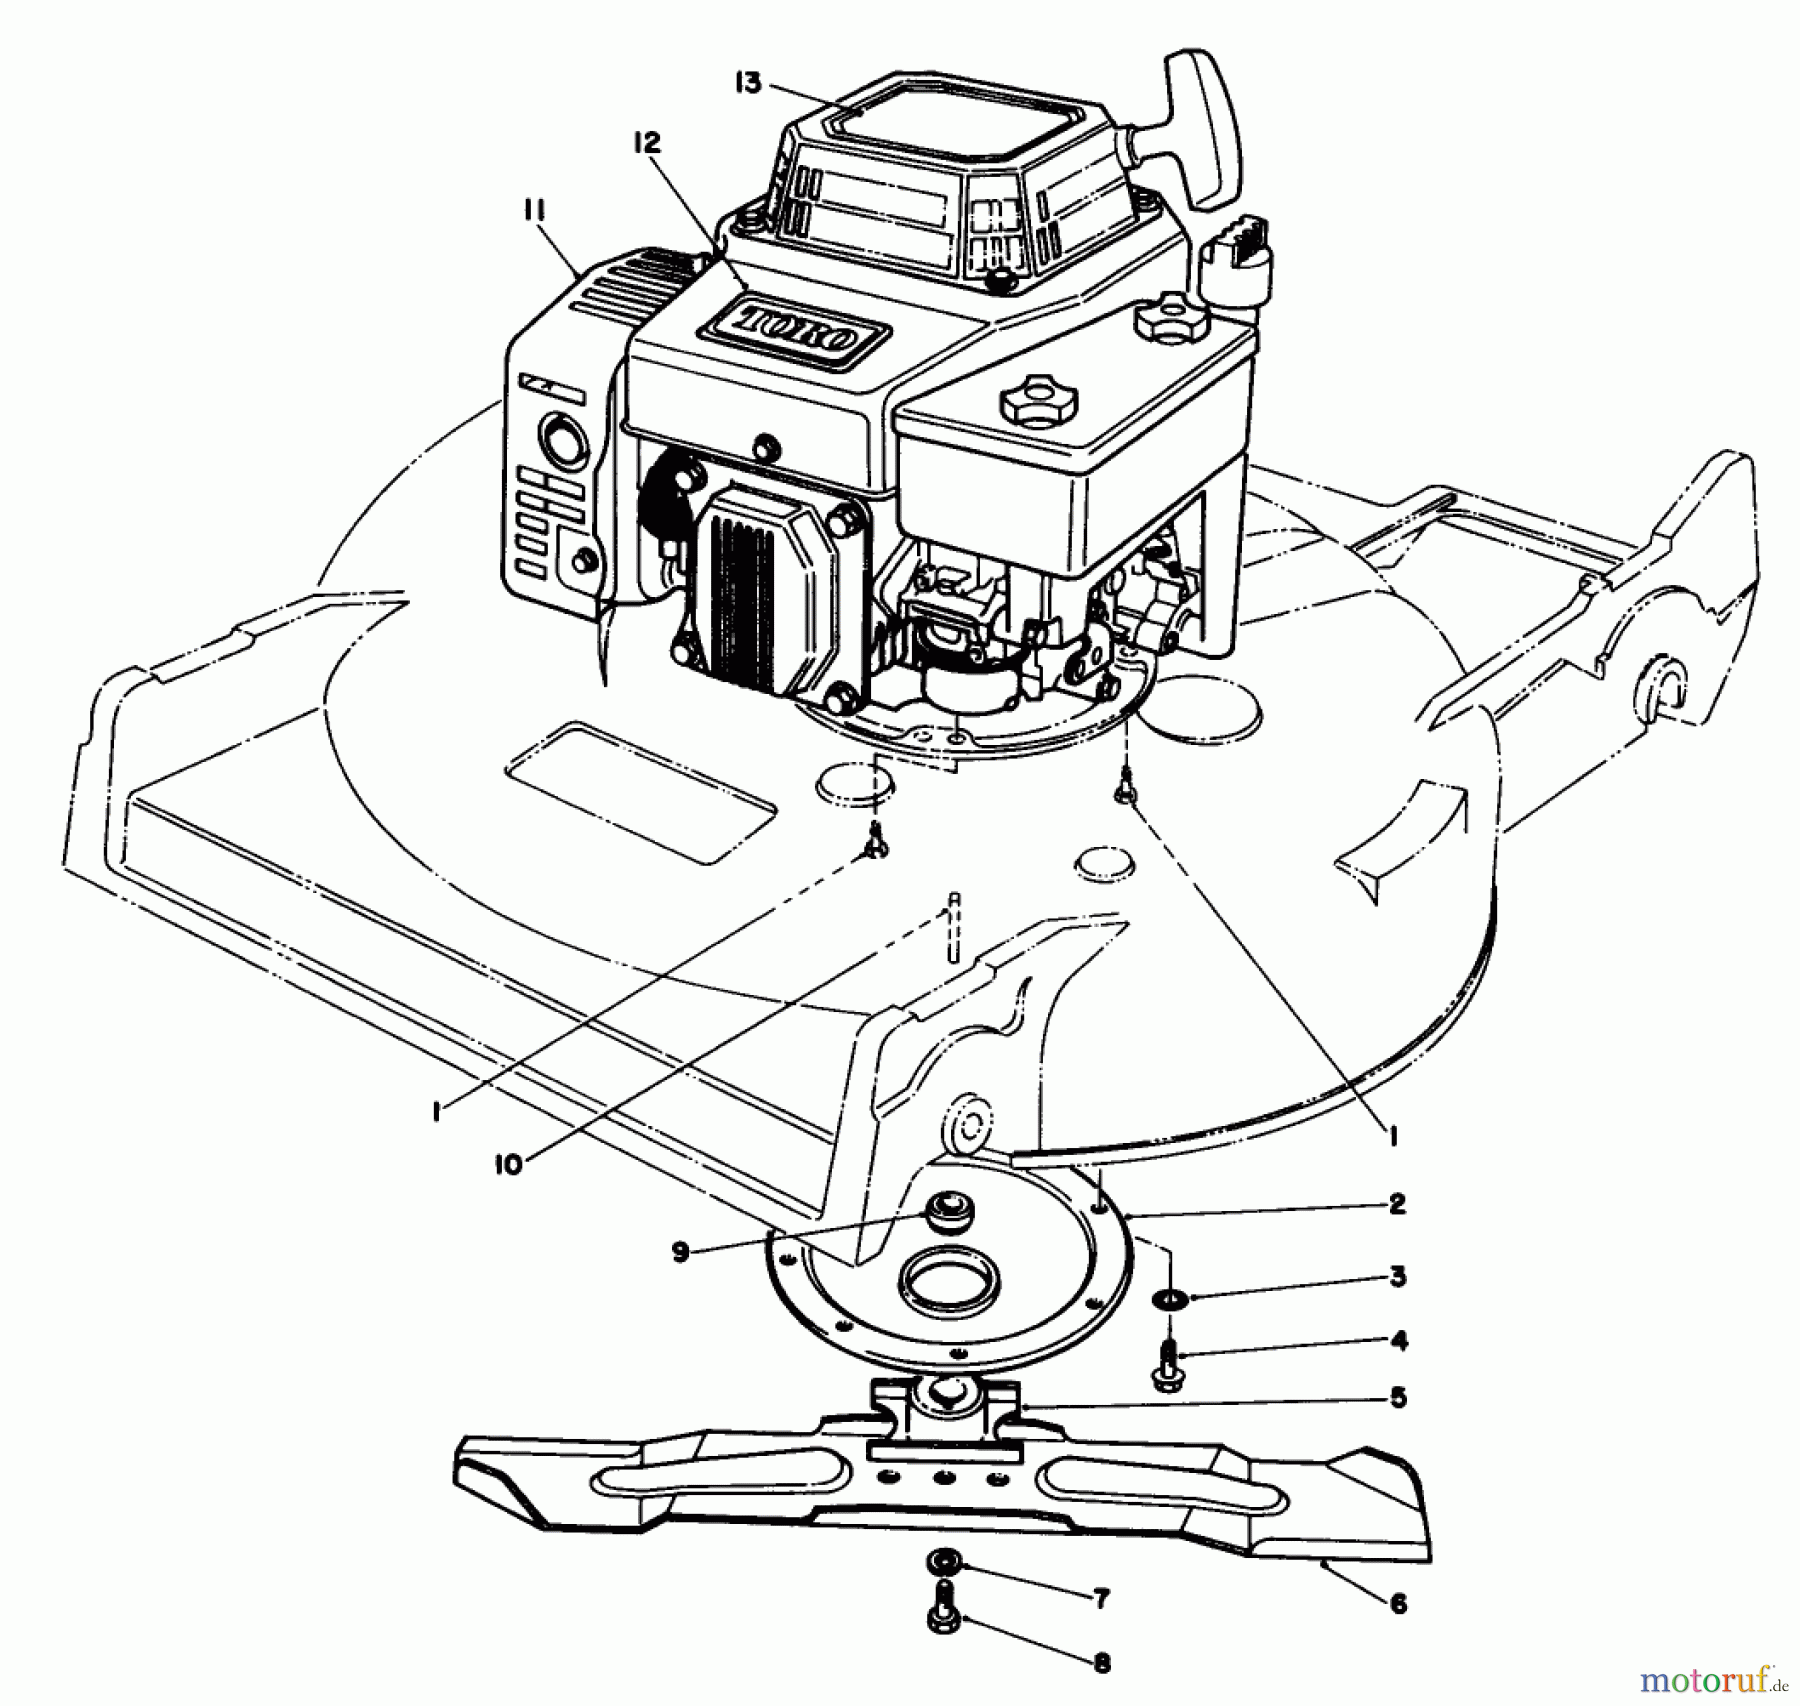  Toro Neu Mowers, Walk-Behind Seite 2 22621 - Toro Lawnmower, 1987 (7000001-7999999) ENGINE ASSEMBLY (MODEL NO. 22525)